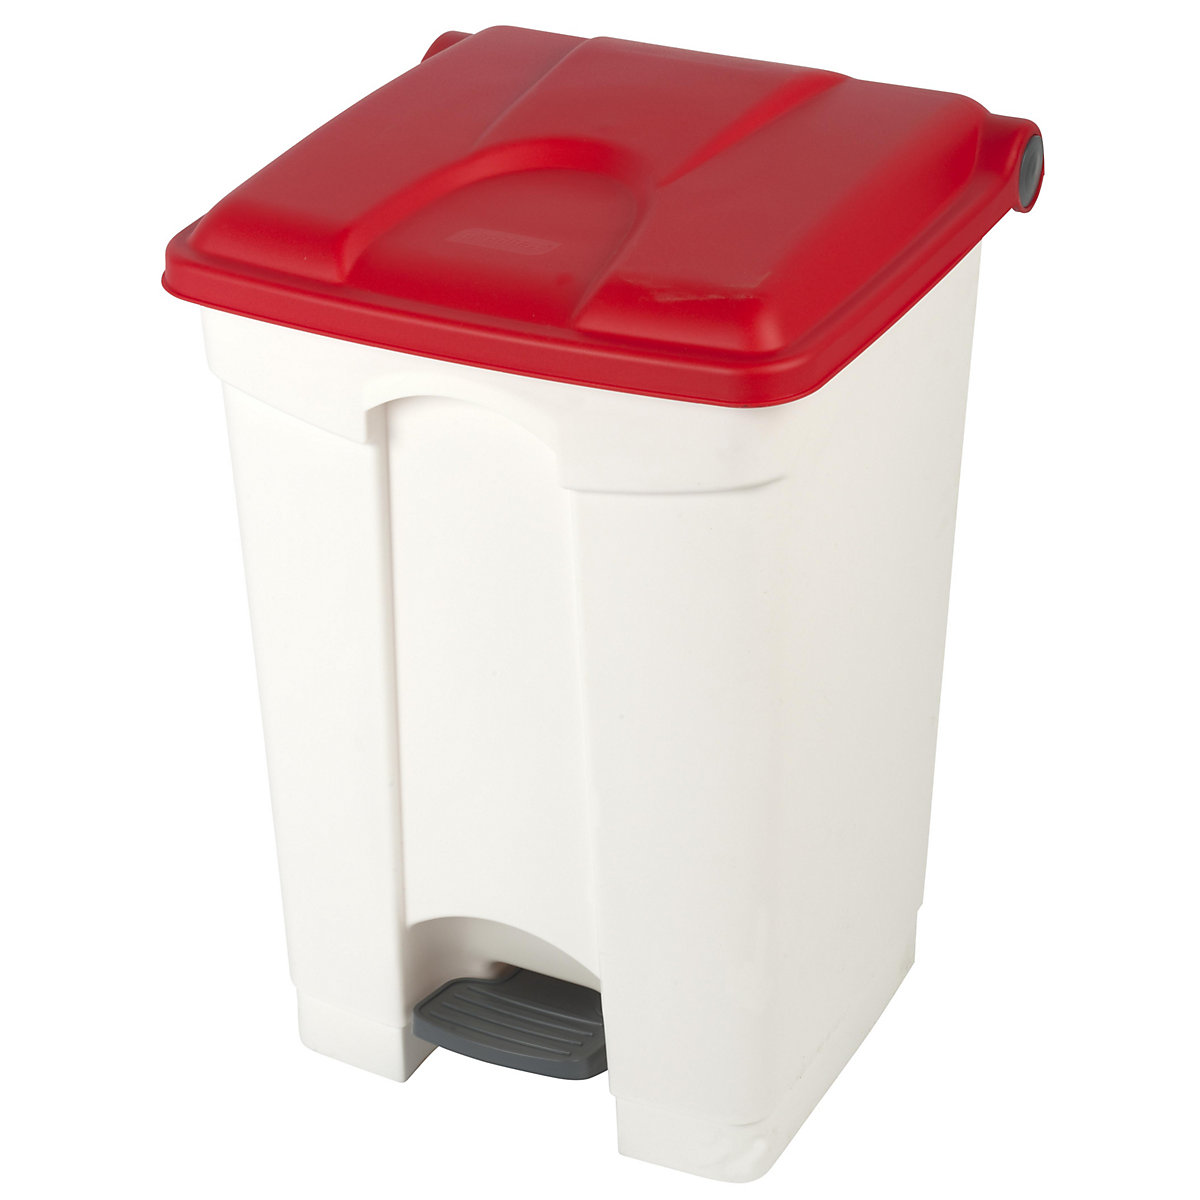 Spremnik za otpad s papučicom, volumen 45 l, ŠxVxD 410 x 600 x 400 mm, u bijeloj boji, poklopac u crvenoj boji-8